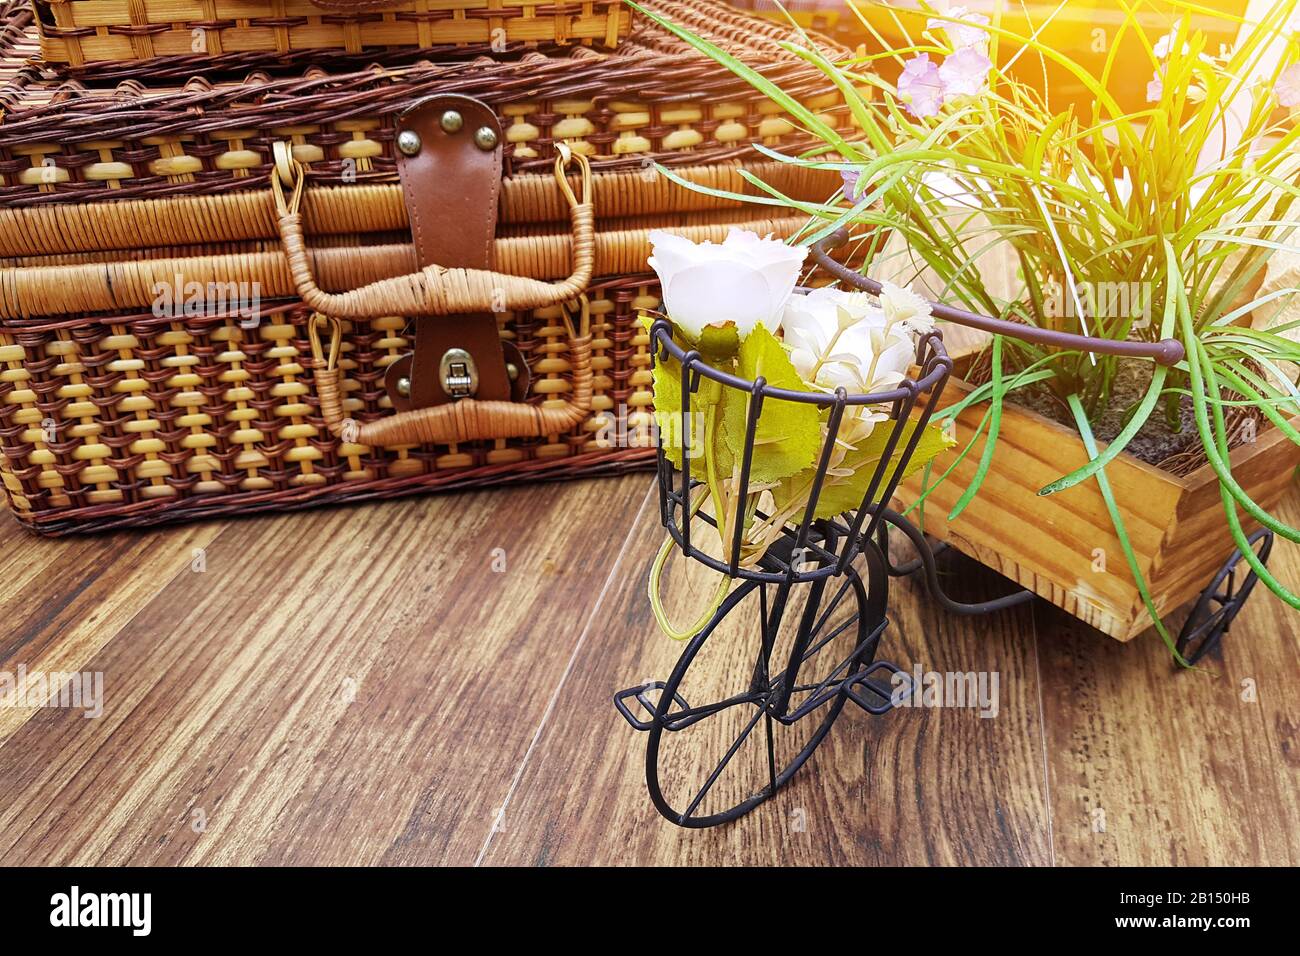 Sommerferienkonzept: Vintage-Koffer auf dem Tisch mit Blumentopf in kleiner Fahrradform. Kopierraum auf Holztisch Stockfoto